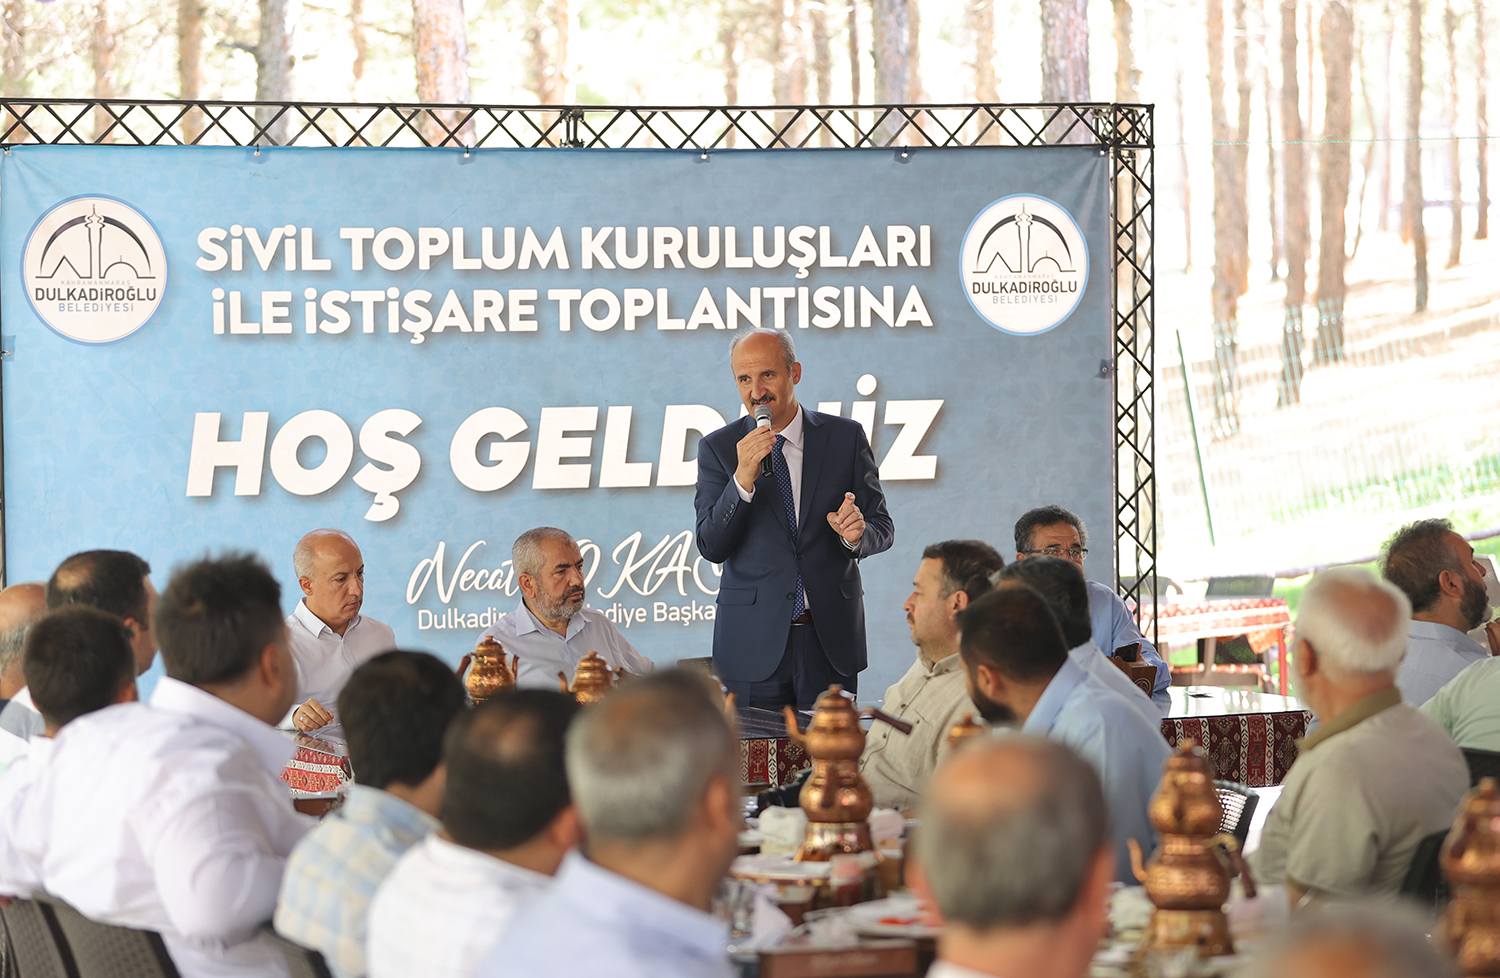 Dulkadiroğlu Belediye Başkanı Necati Okay: Geçmişimizle Geleceğimizi Bütünleştirdik